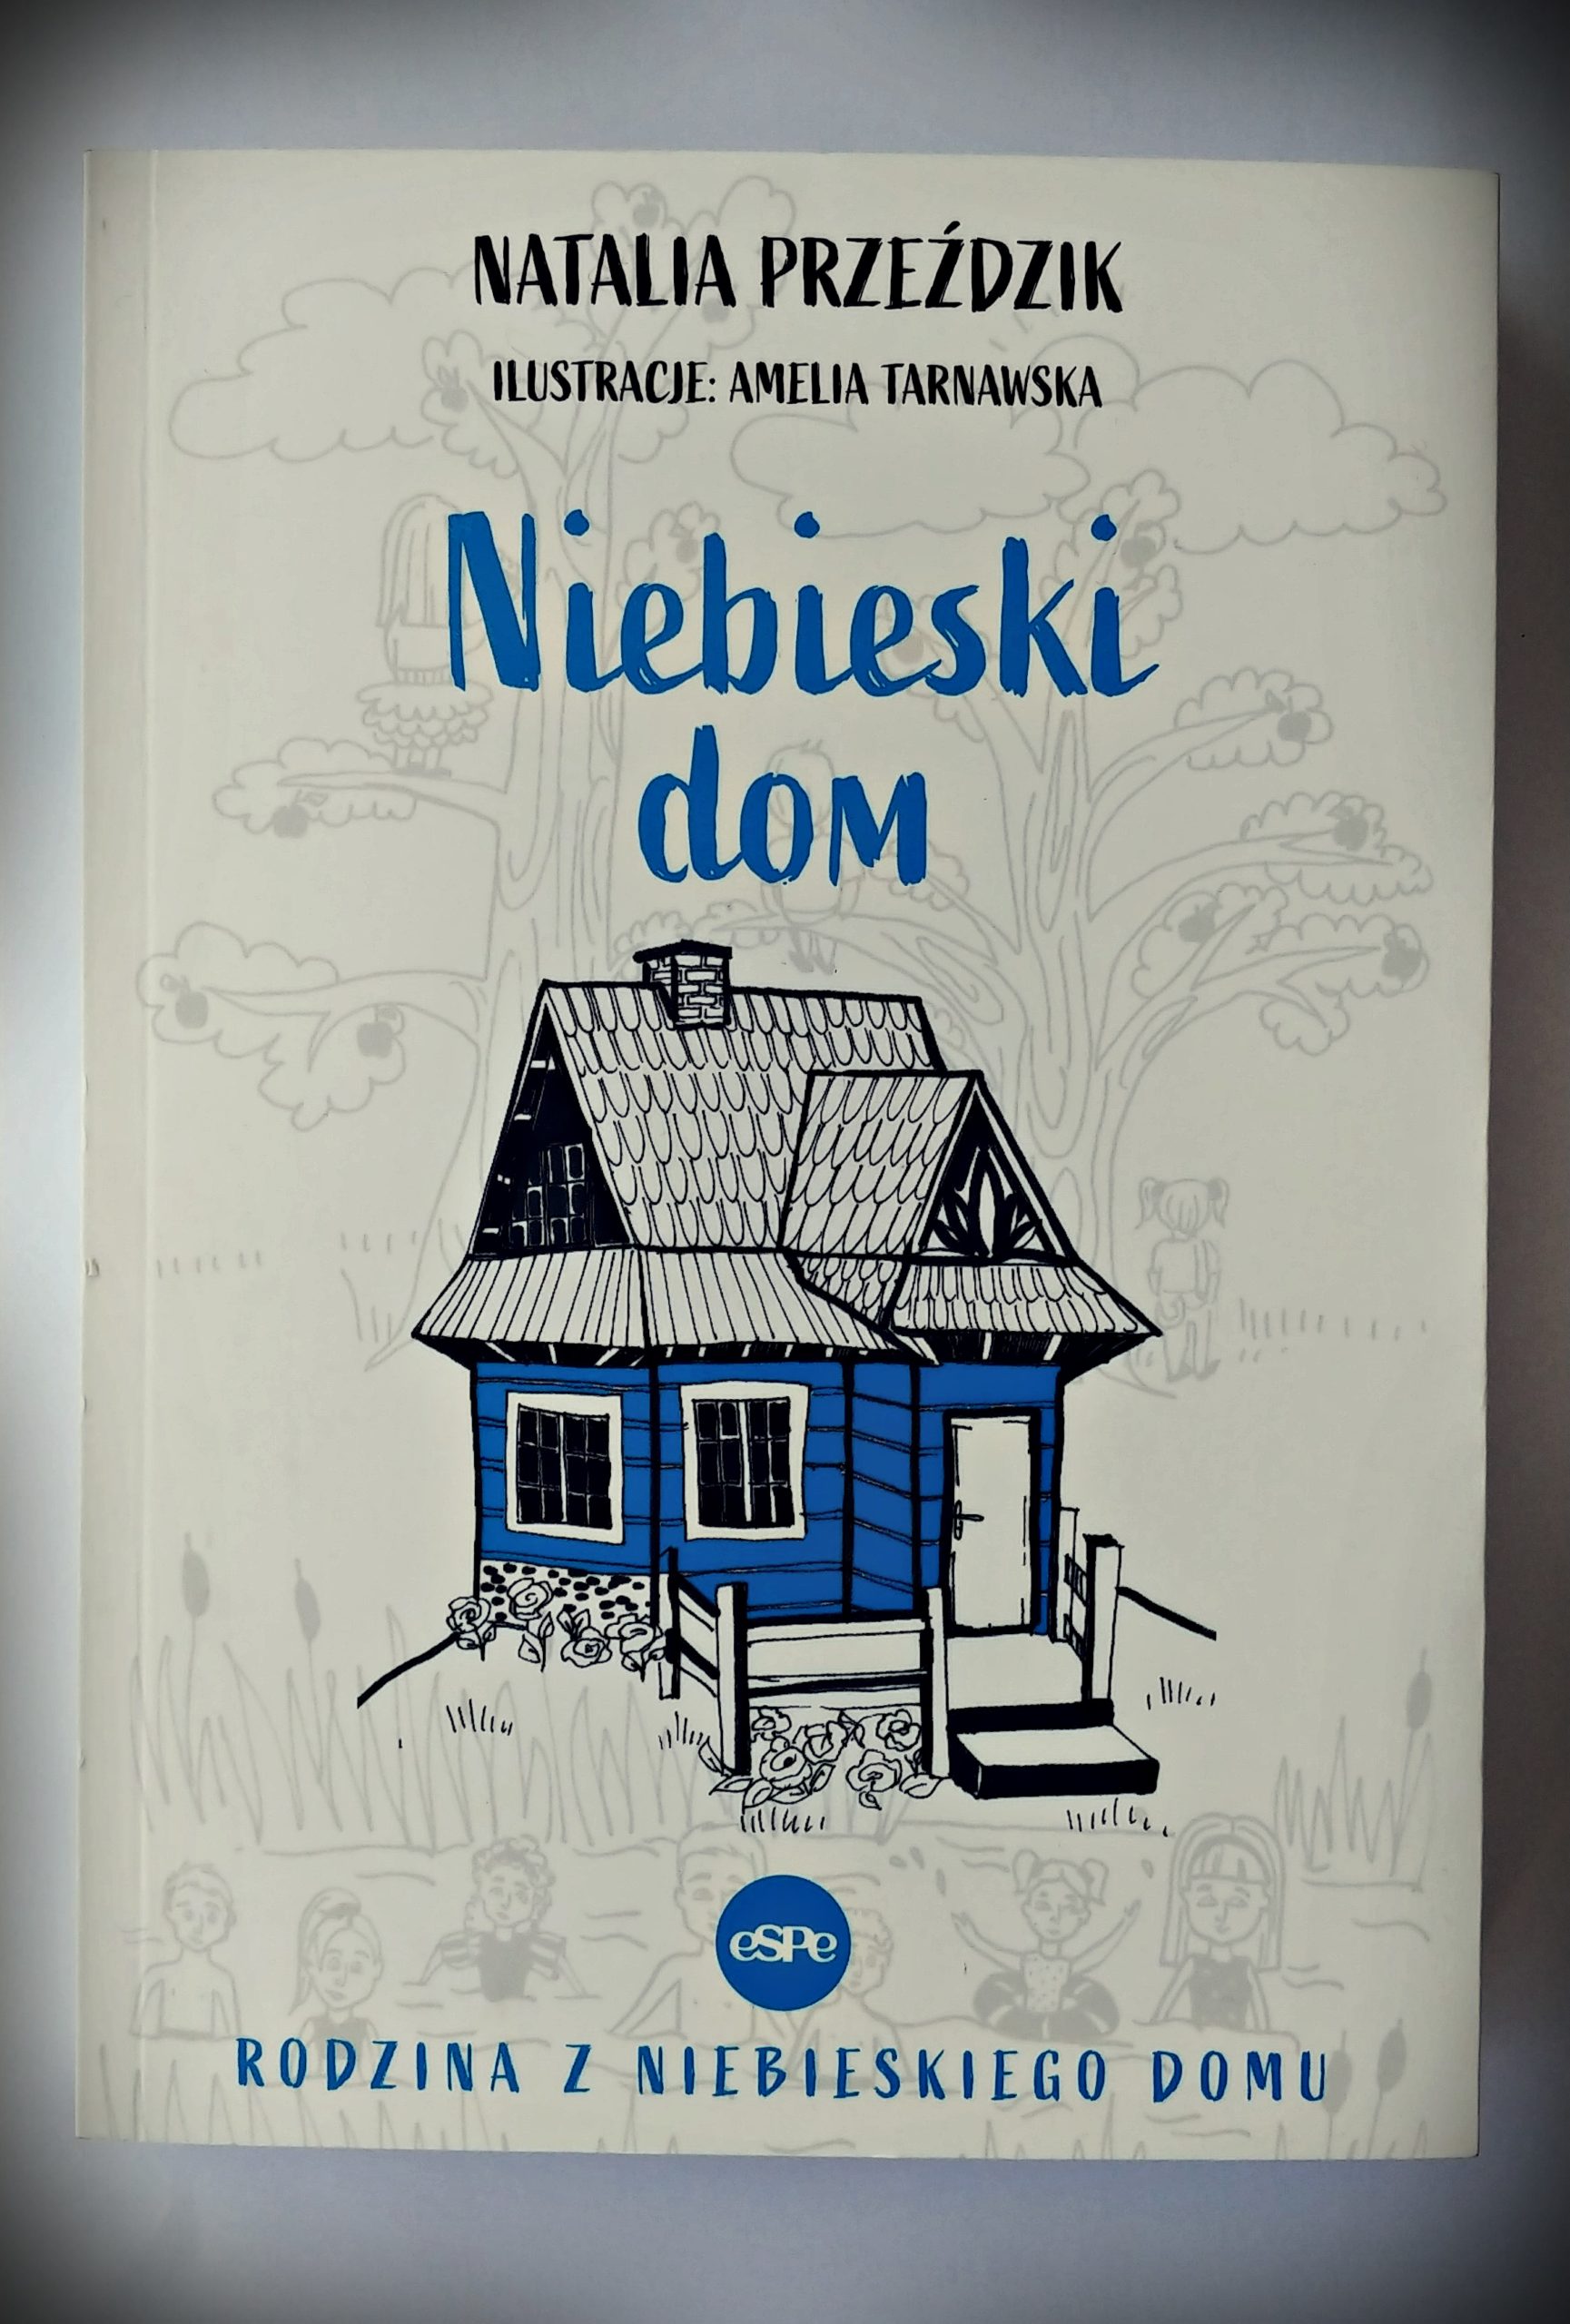 Niebieski dom opinia o książce dla dzieci